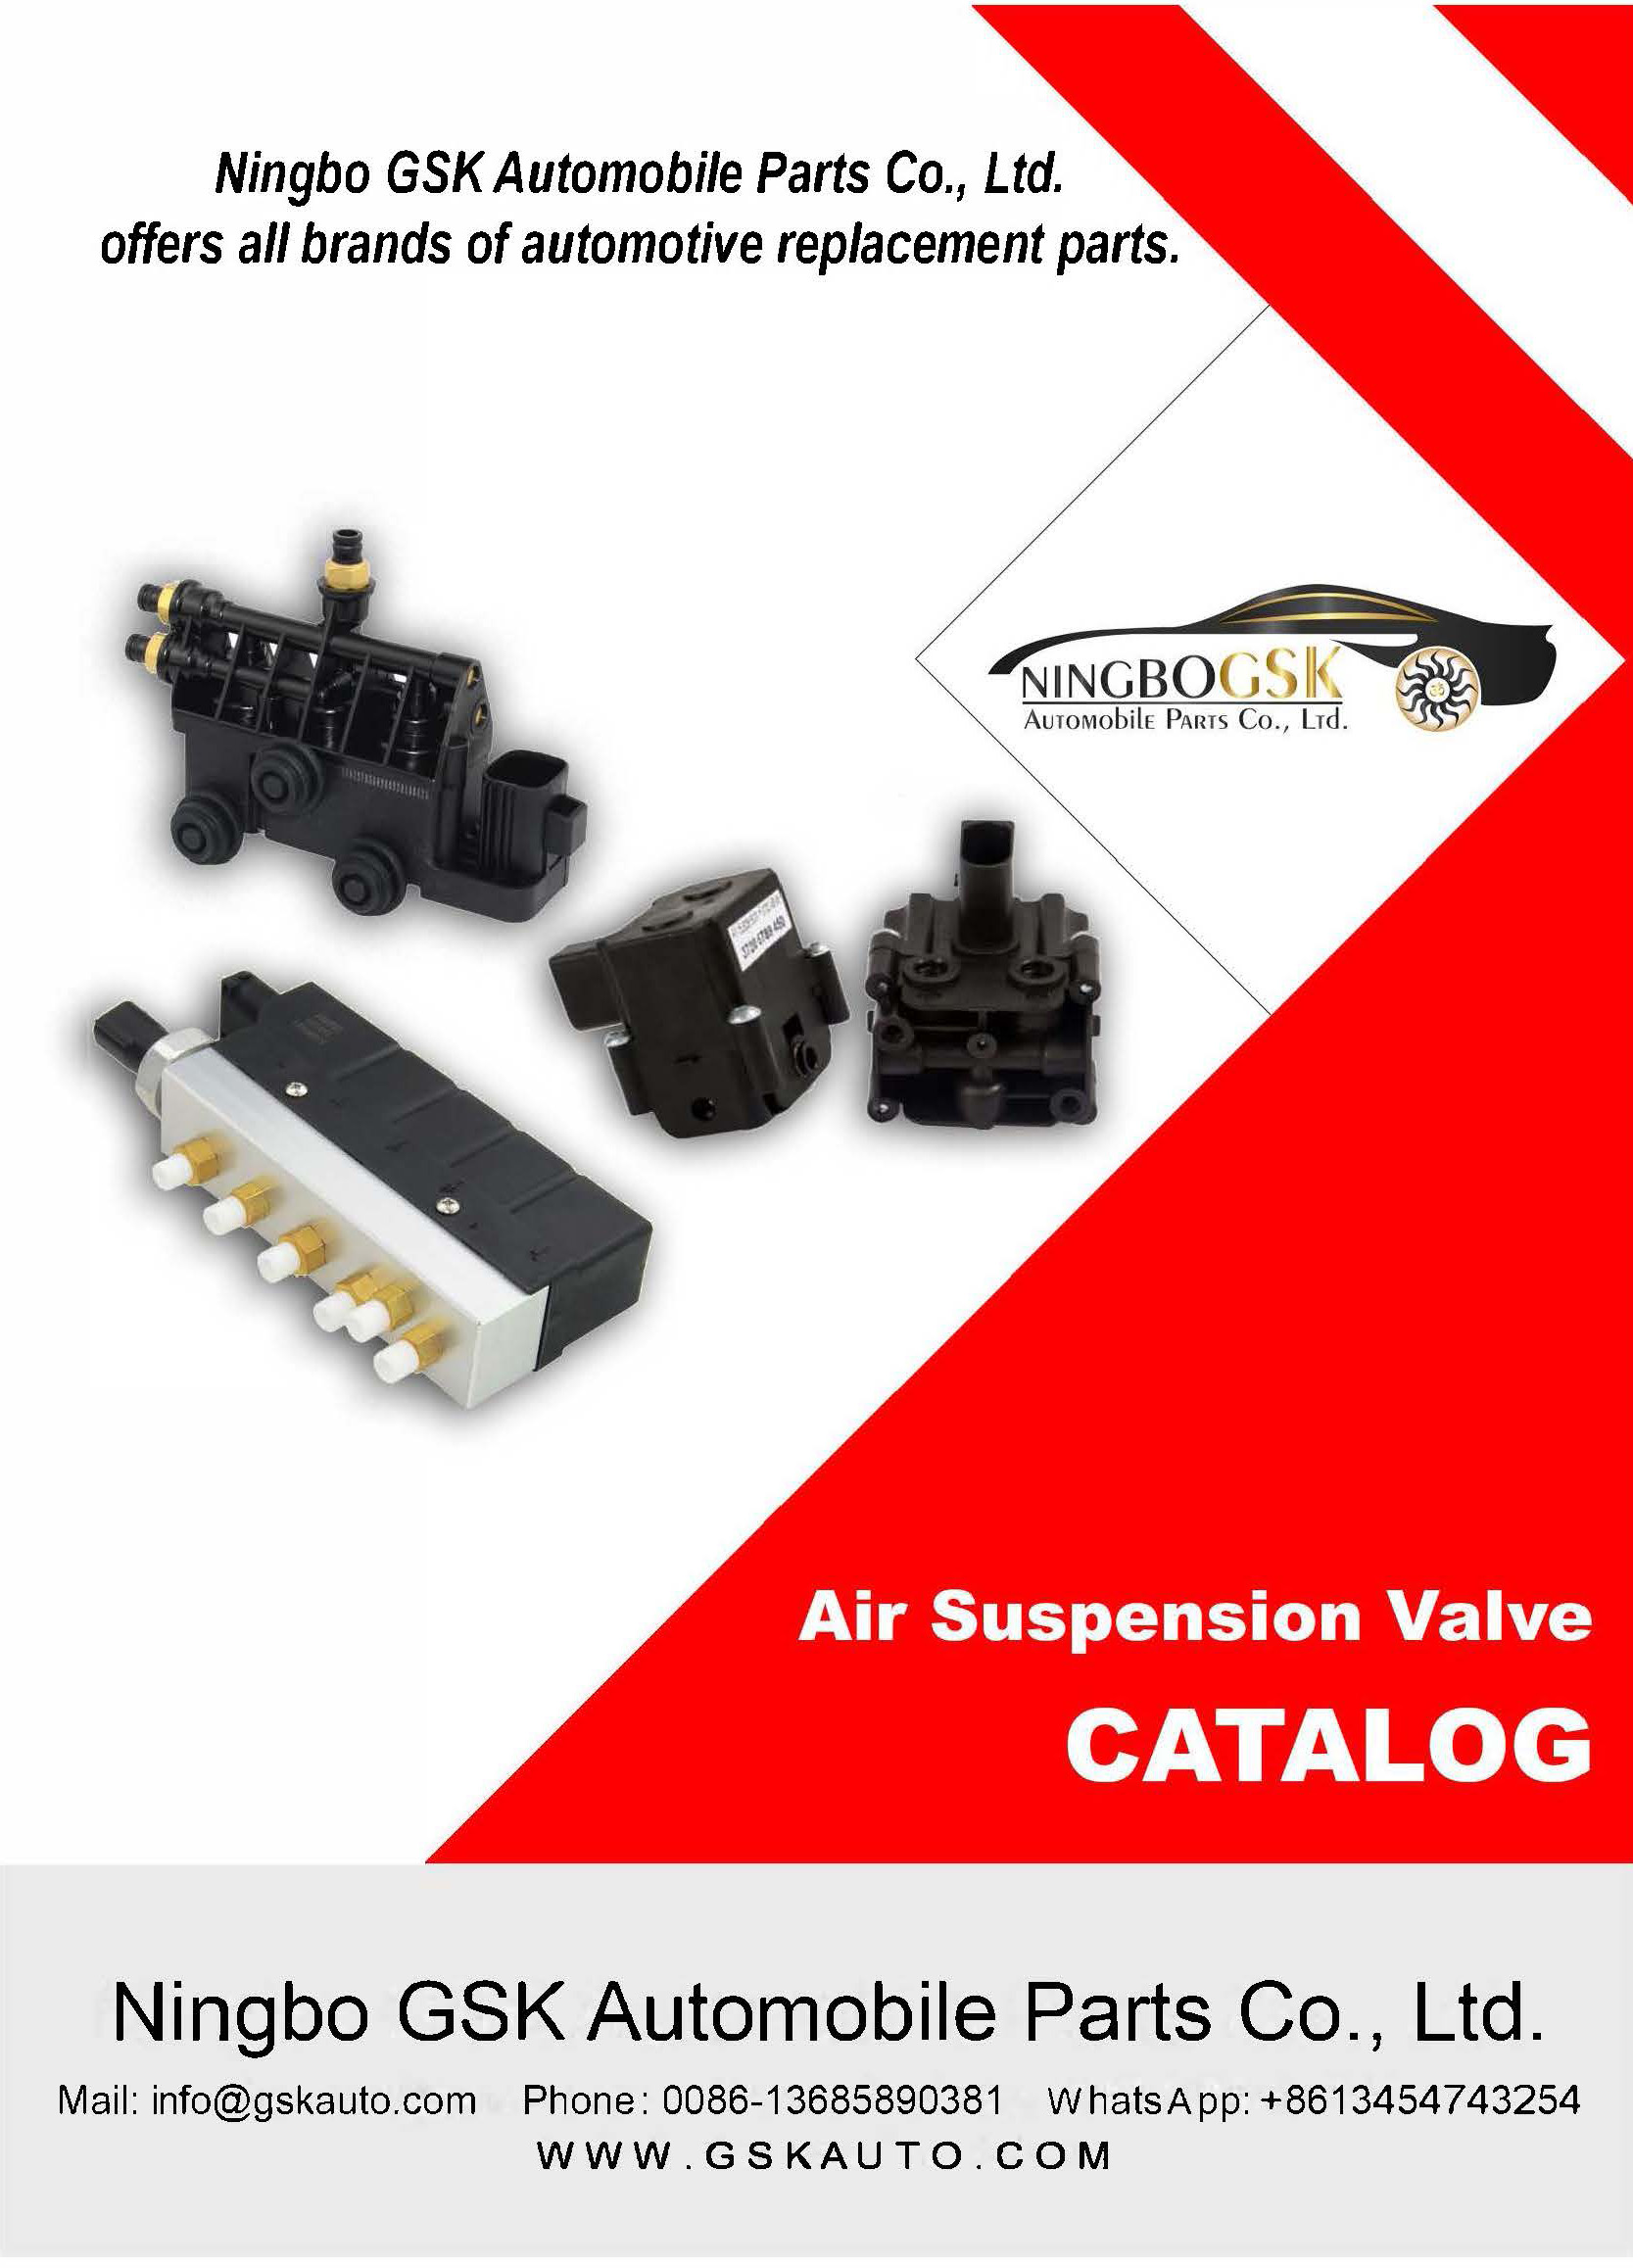 Air Suspension Valve Catalog